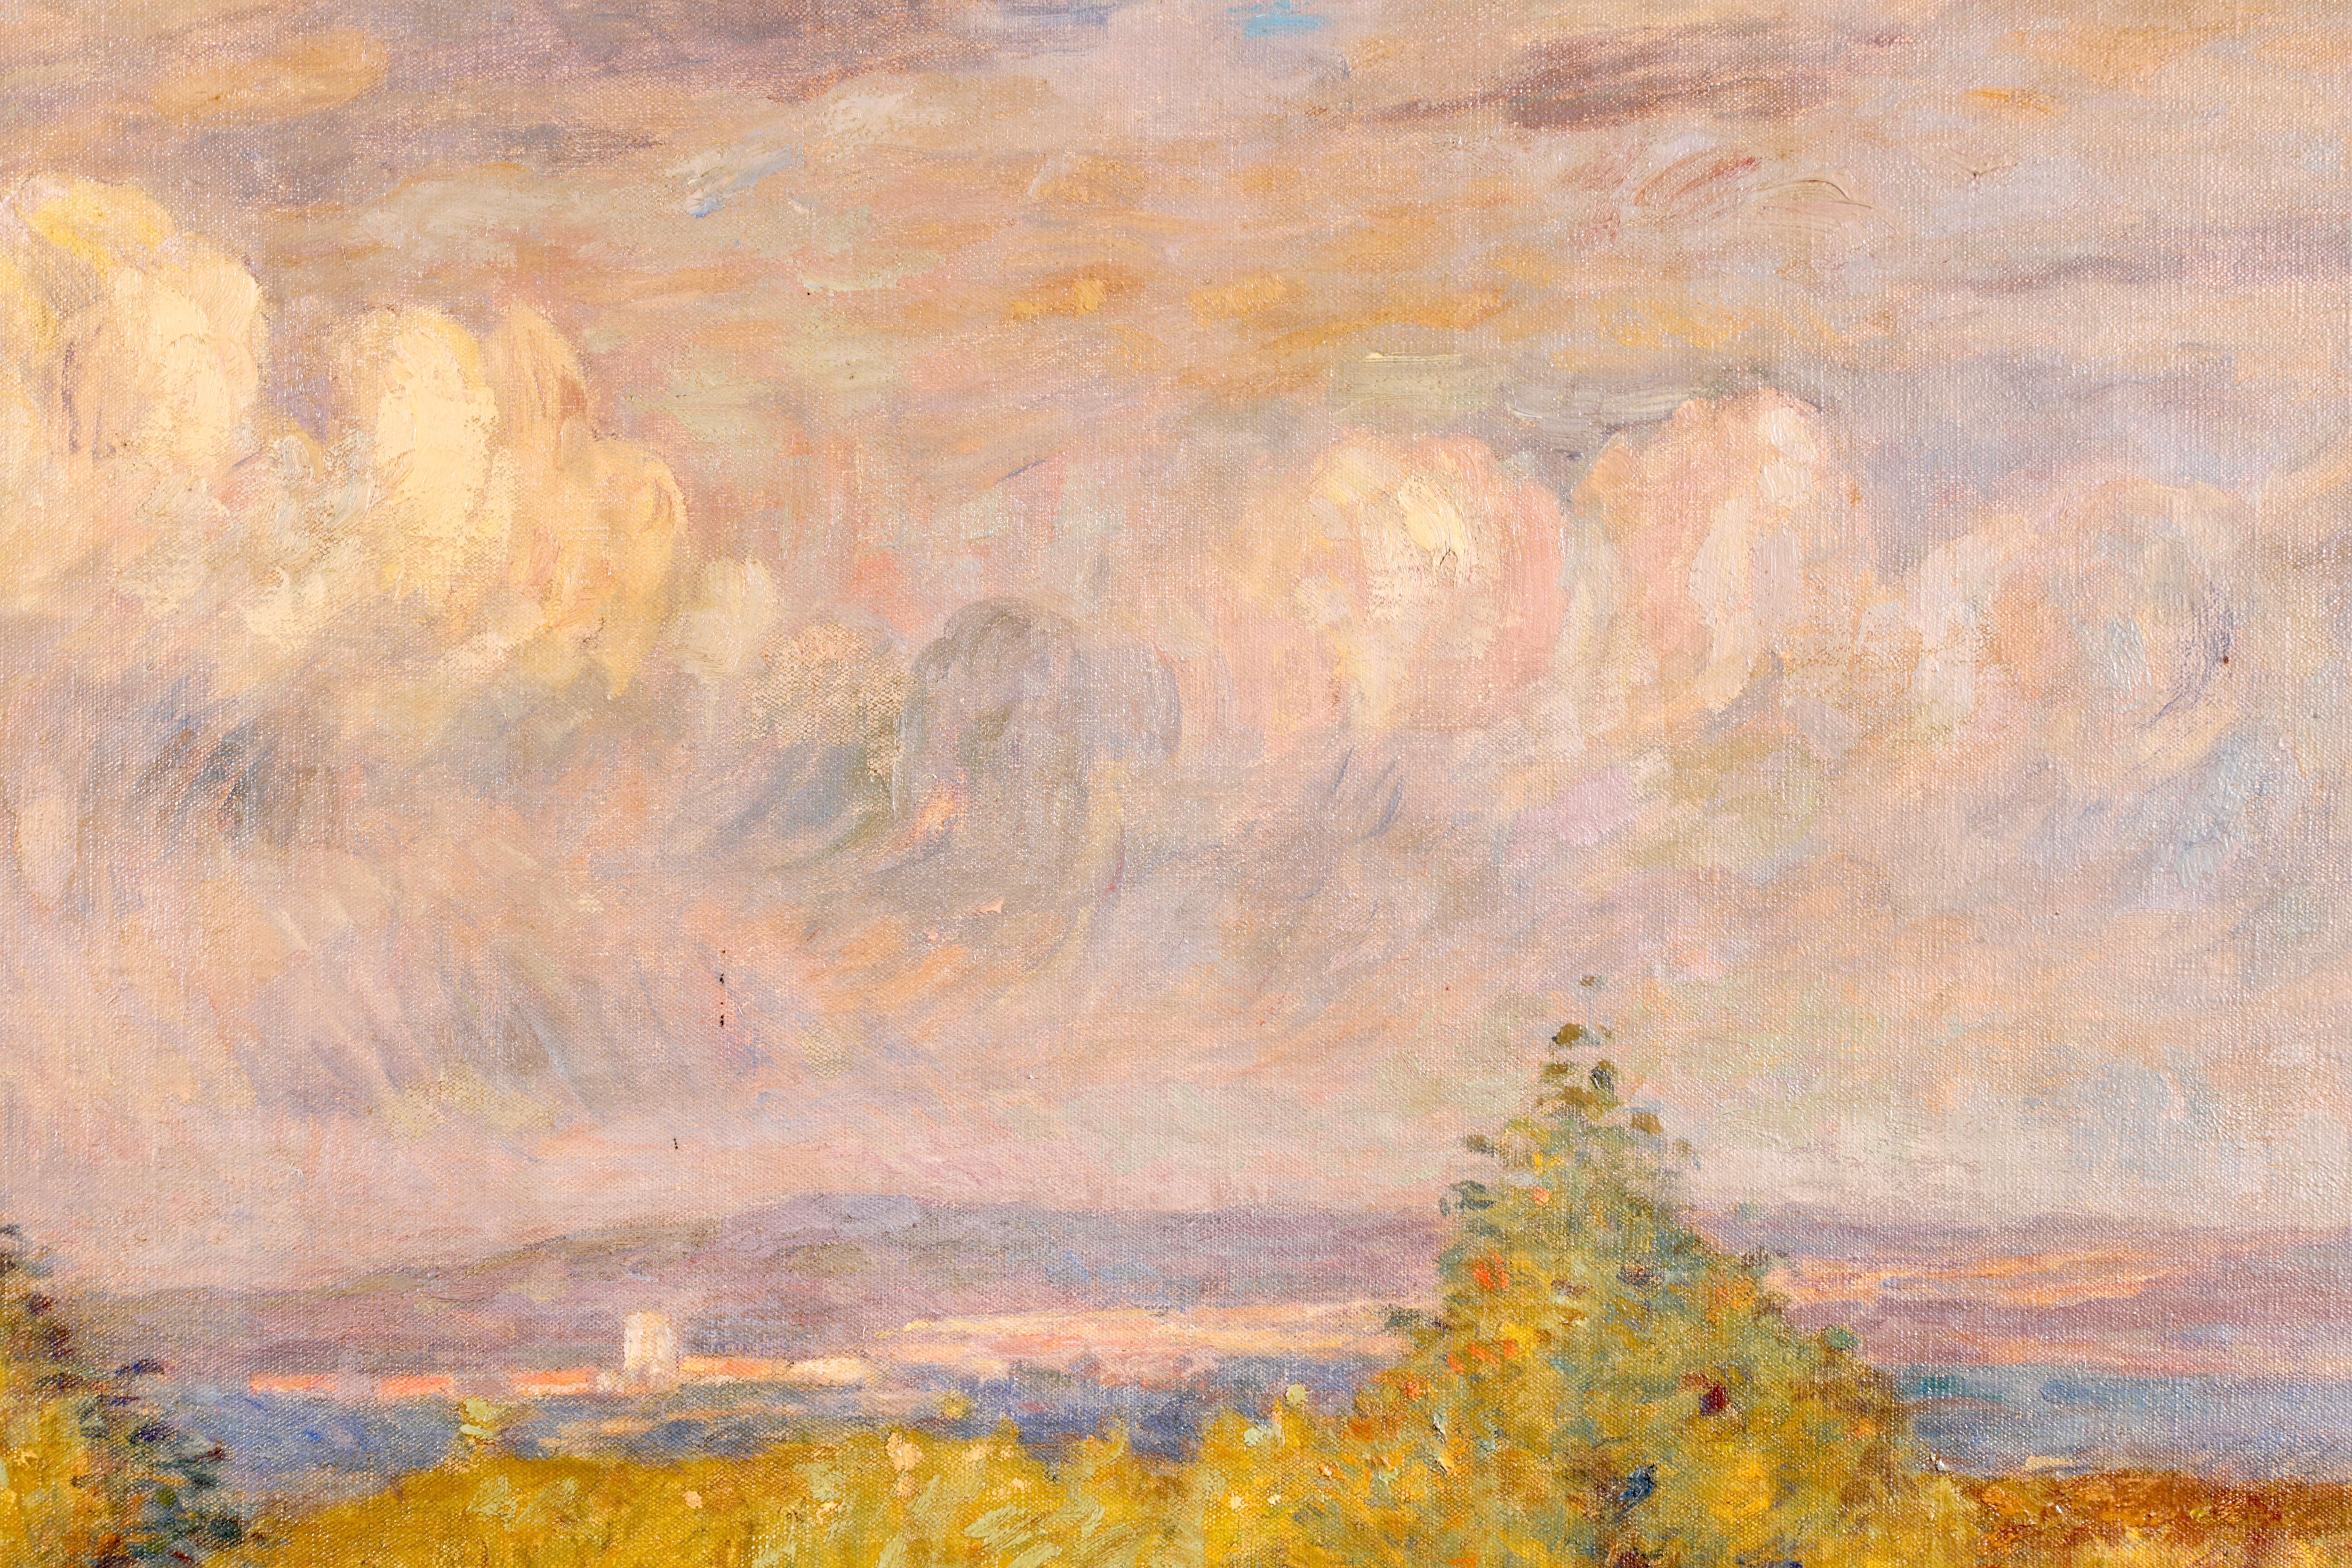 Paysage à l'huile sur toile signé et titré vers 1910 par la peintre impressionniste française Marie Duhem. L'œuvre représente une femme dans un jardin par une journée nuageuse, s'occupant d'un parterre rempli de fleurs rouges, roses, jaunes et